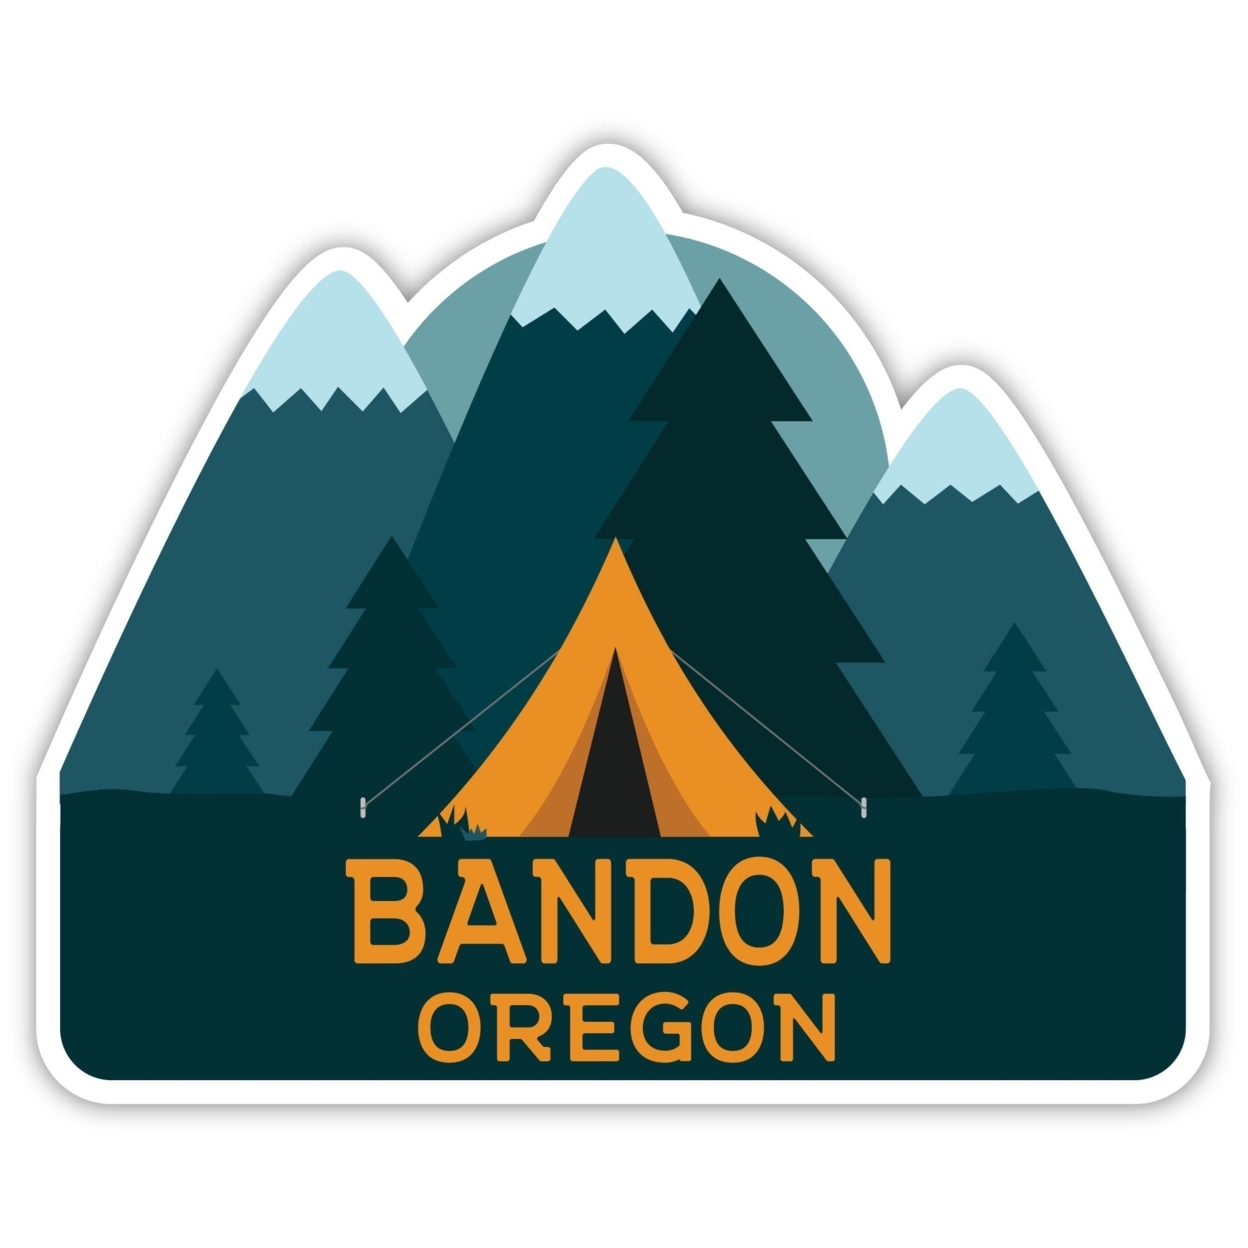 Bandon Oregon Souvenir Decorative Stickers (Choose Theme And Size) - Single Unit, 10-Inch, Tent